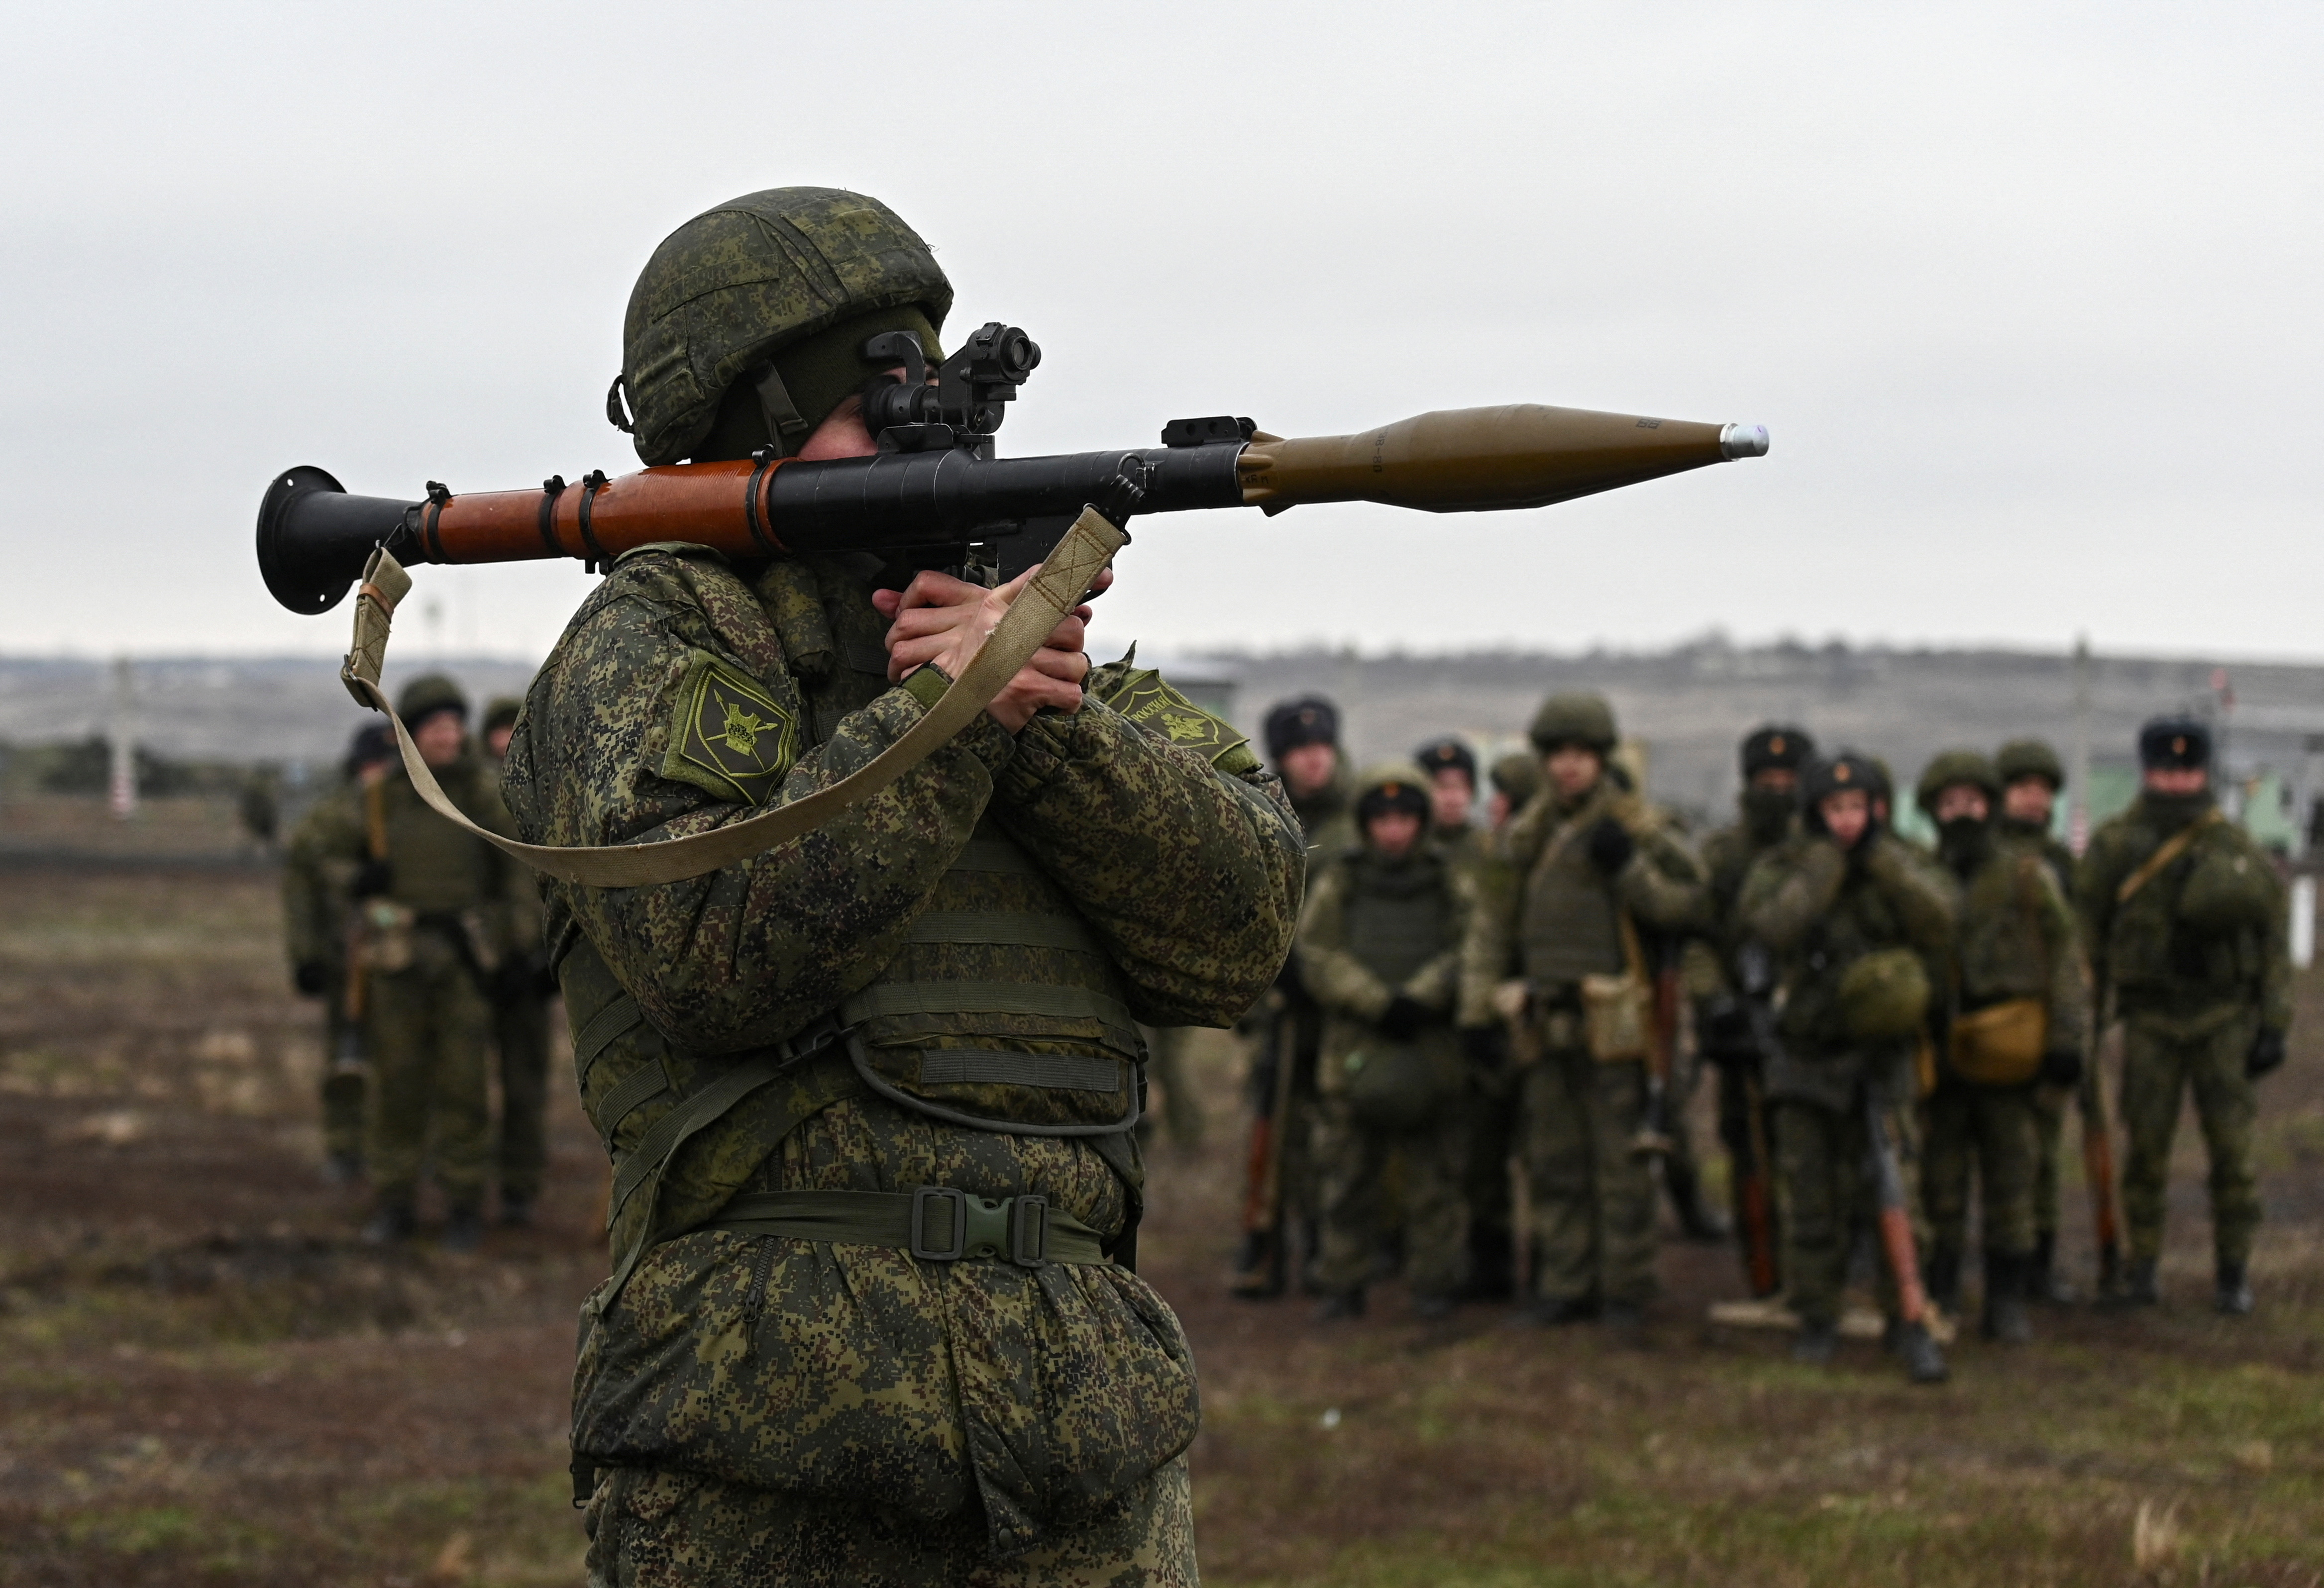 Ένας χειριστής χειροβομβίδων των ρωσικών ενόπλων δυνάμεων συμμετέχει σε ασκήσεις μάχης στην περιοχή Kadamovsky στην περιοχή του Ροστόφ, Ρωσία, 14 Δεκεμβρίου 2021. REUTERS/Sergey Pivovarov